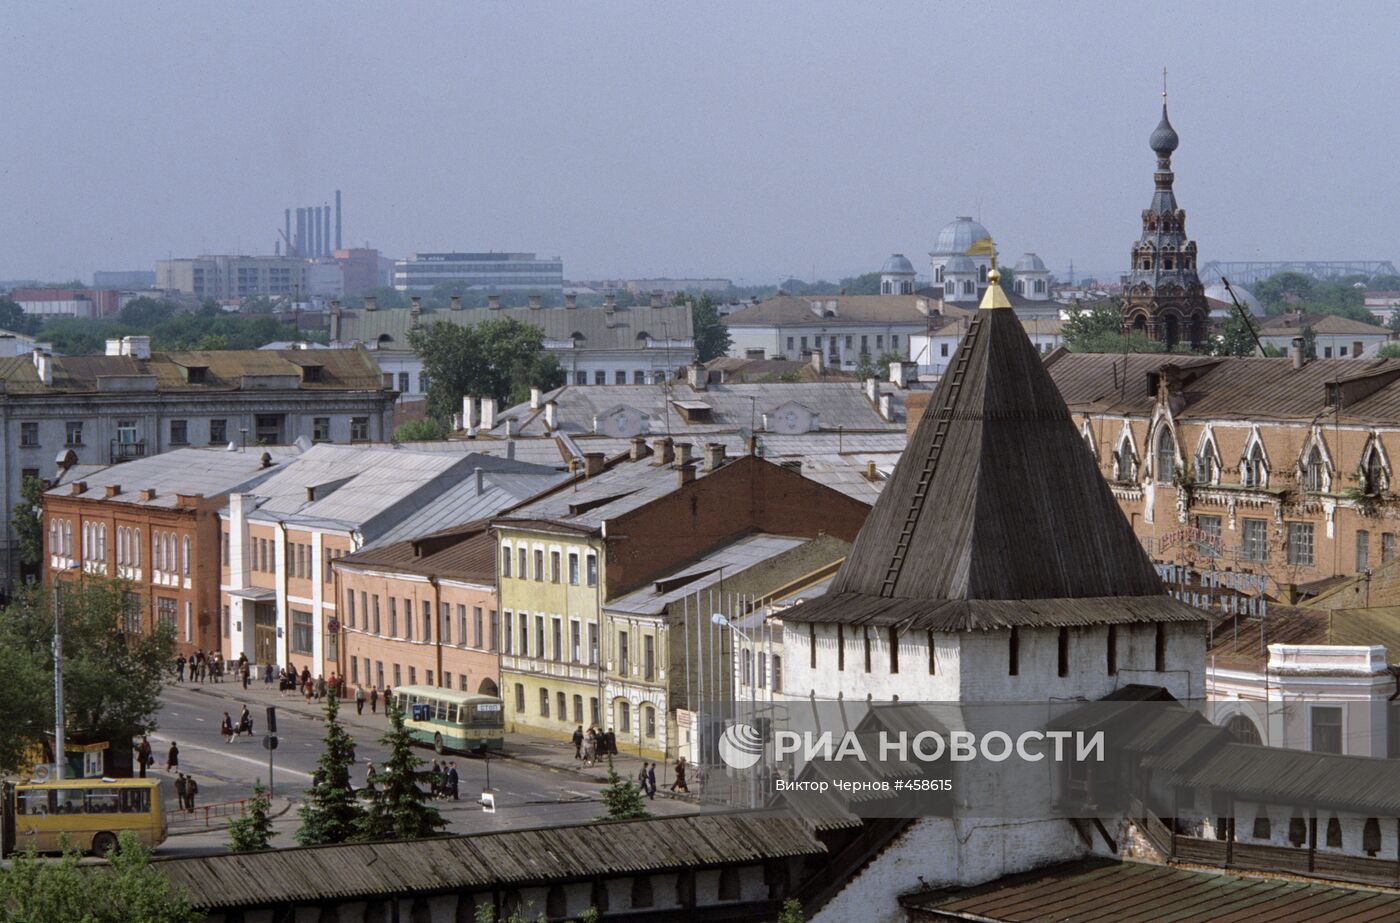 Вид на старую часть города Ярославля